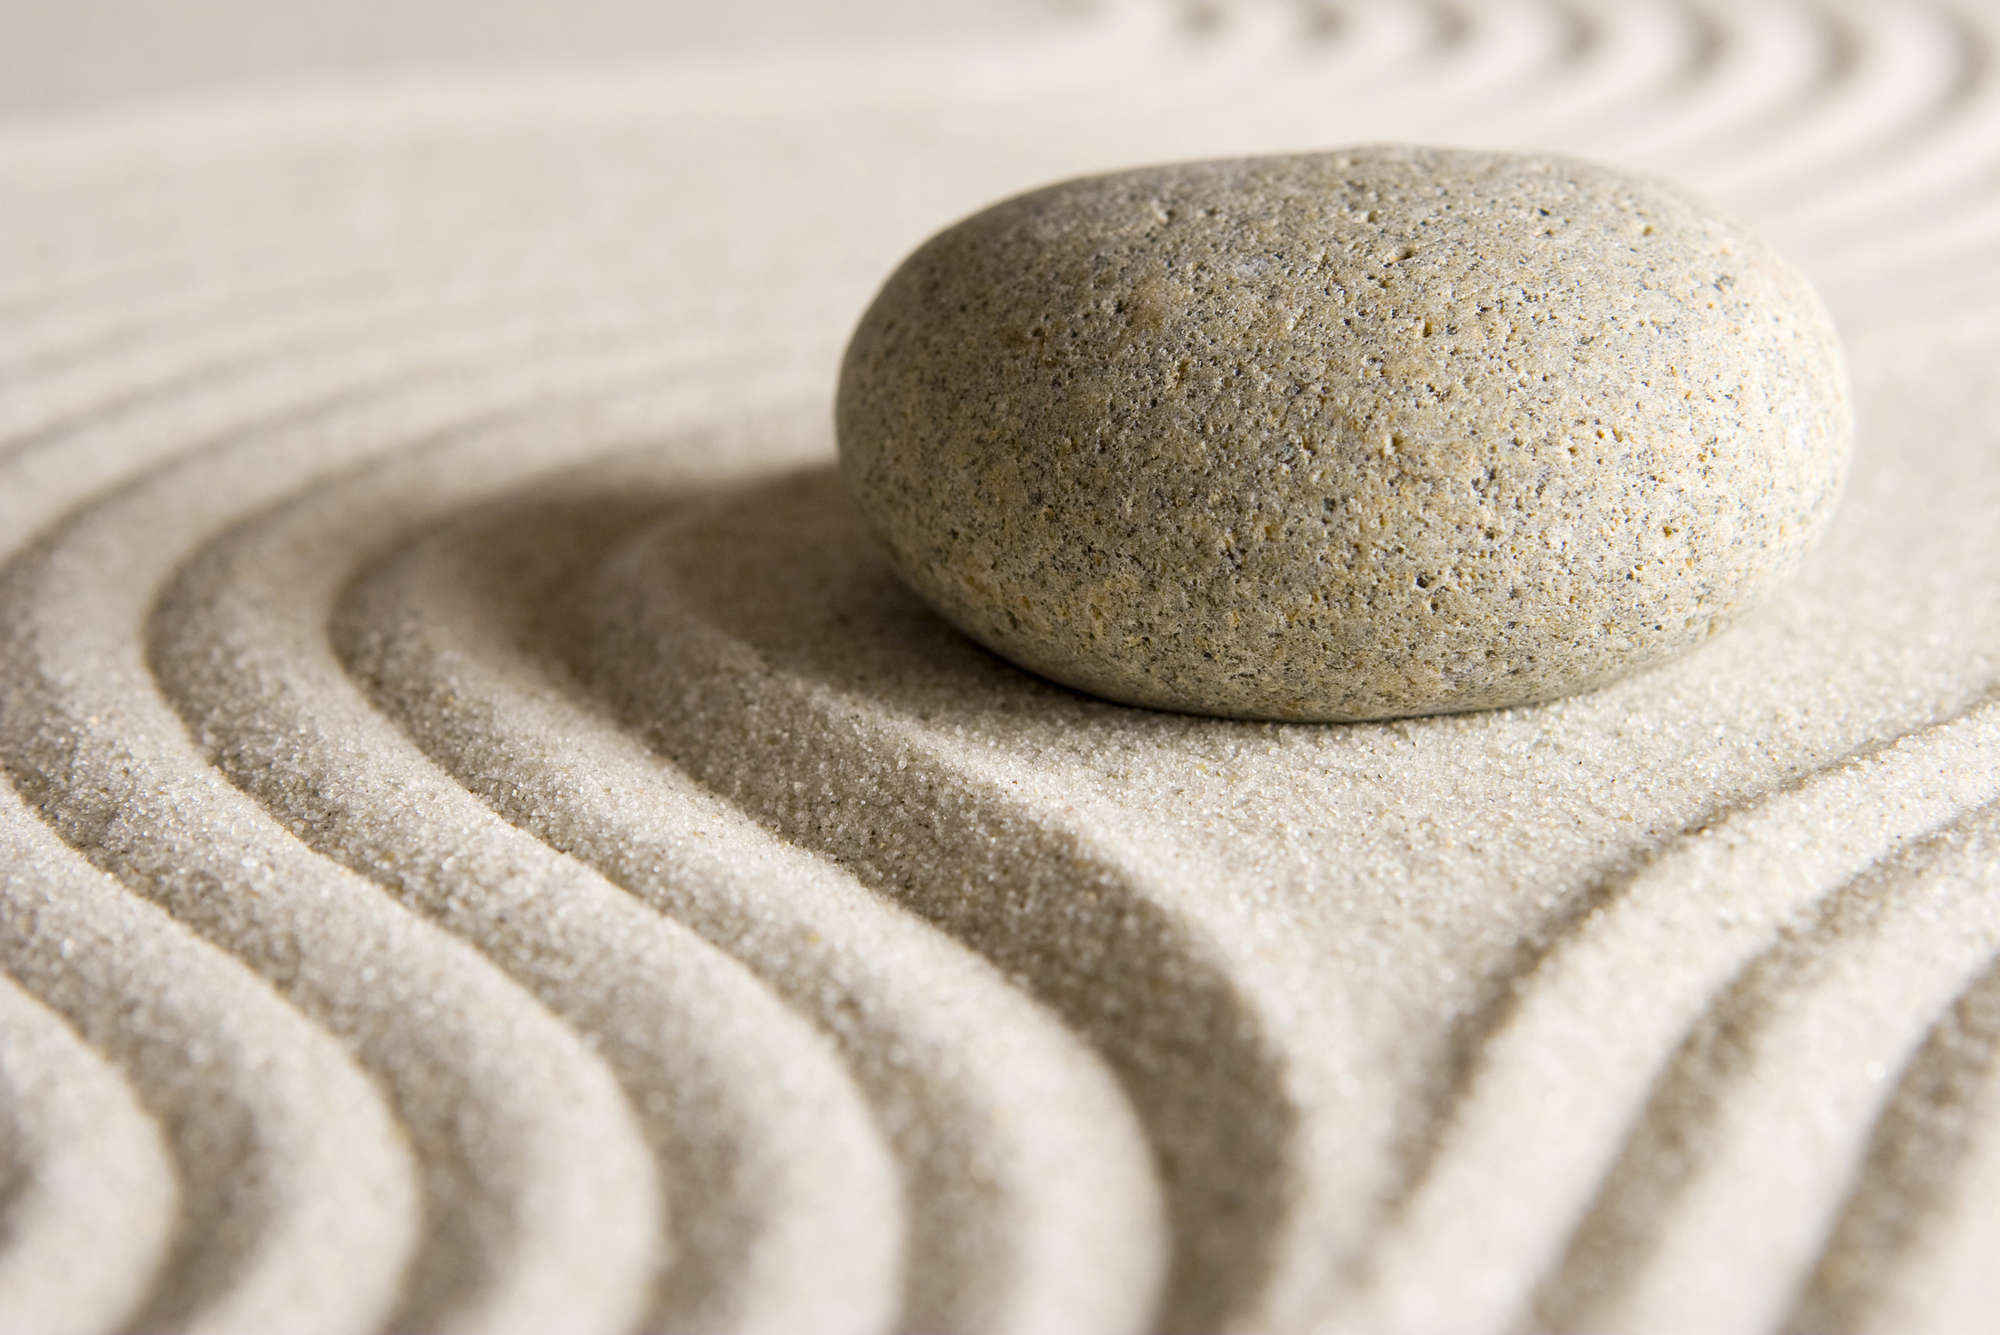             Digital behangen in het zand met steen - Premium glad vlies
        